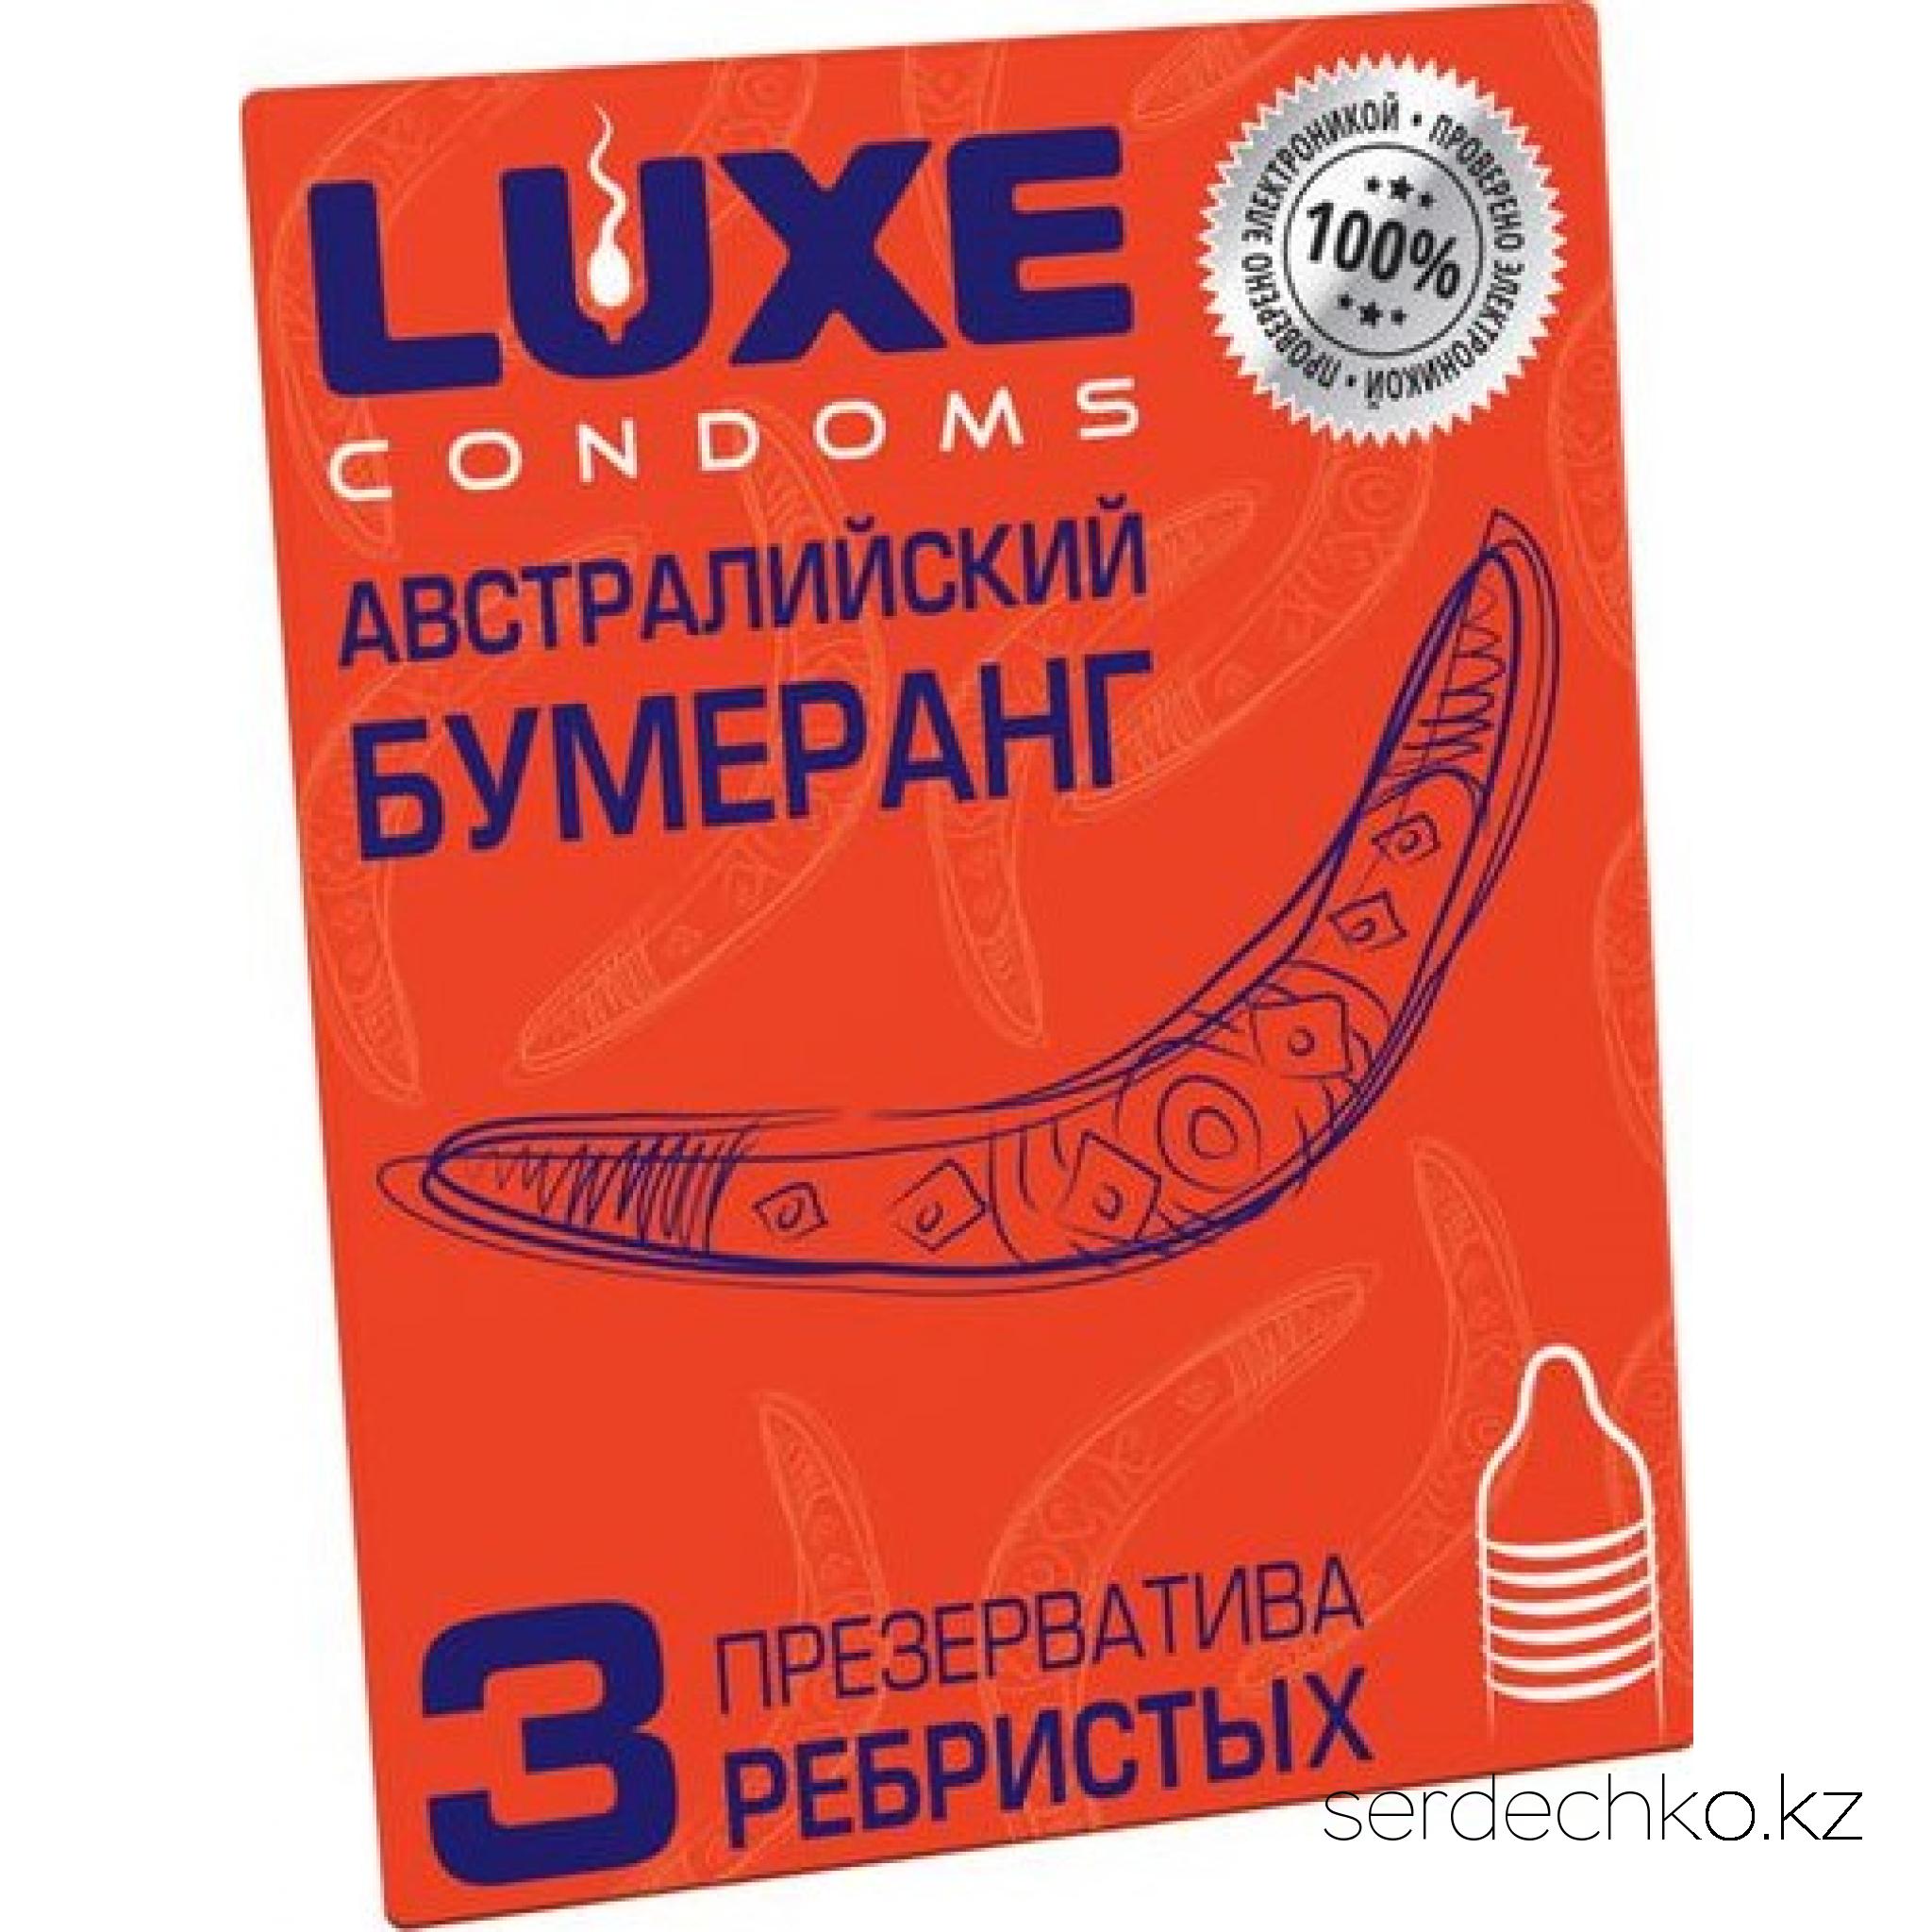 Презервативы Luxe, конверт Австралийский бумеранг, 18 см, 5,2 см, 3 шт, 
	3 шт. ребристых презервативов в смазке. Девушкам любящим понежнее - идеальный вариант.
